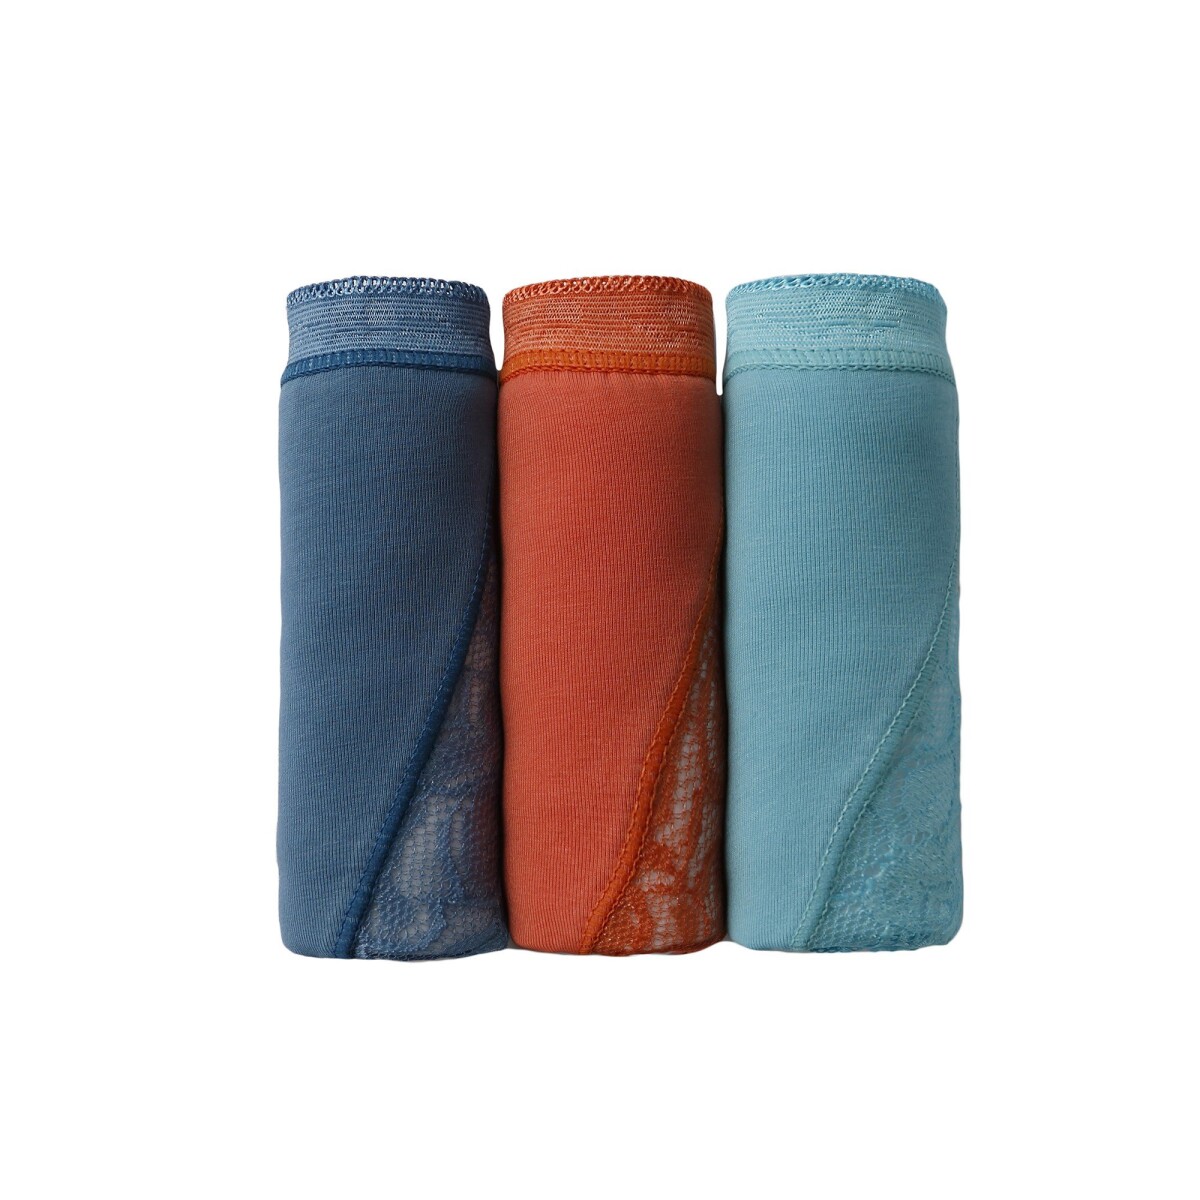 Blancheporte Sada 3 kalhotek super maxi z pružné bavlny s krajkou oranžovámodrátyrkysová 3840